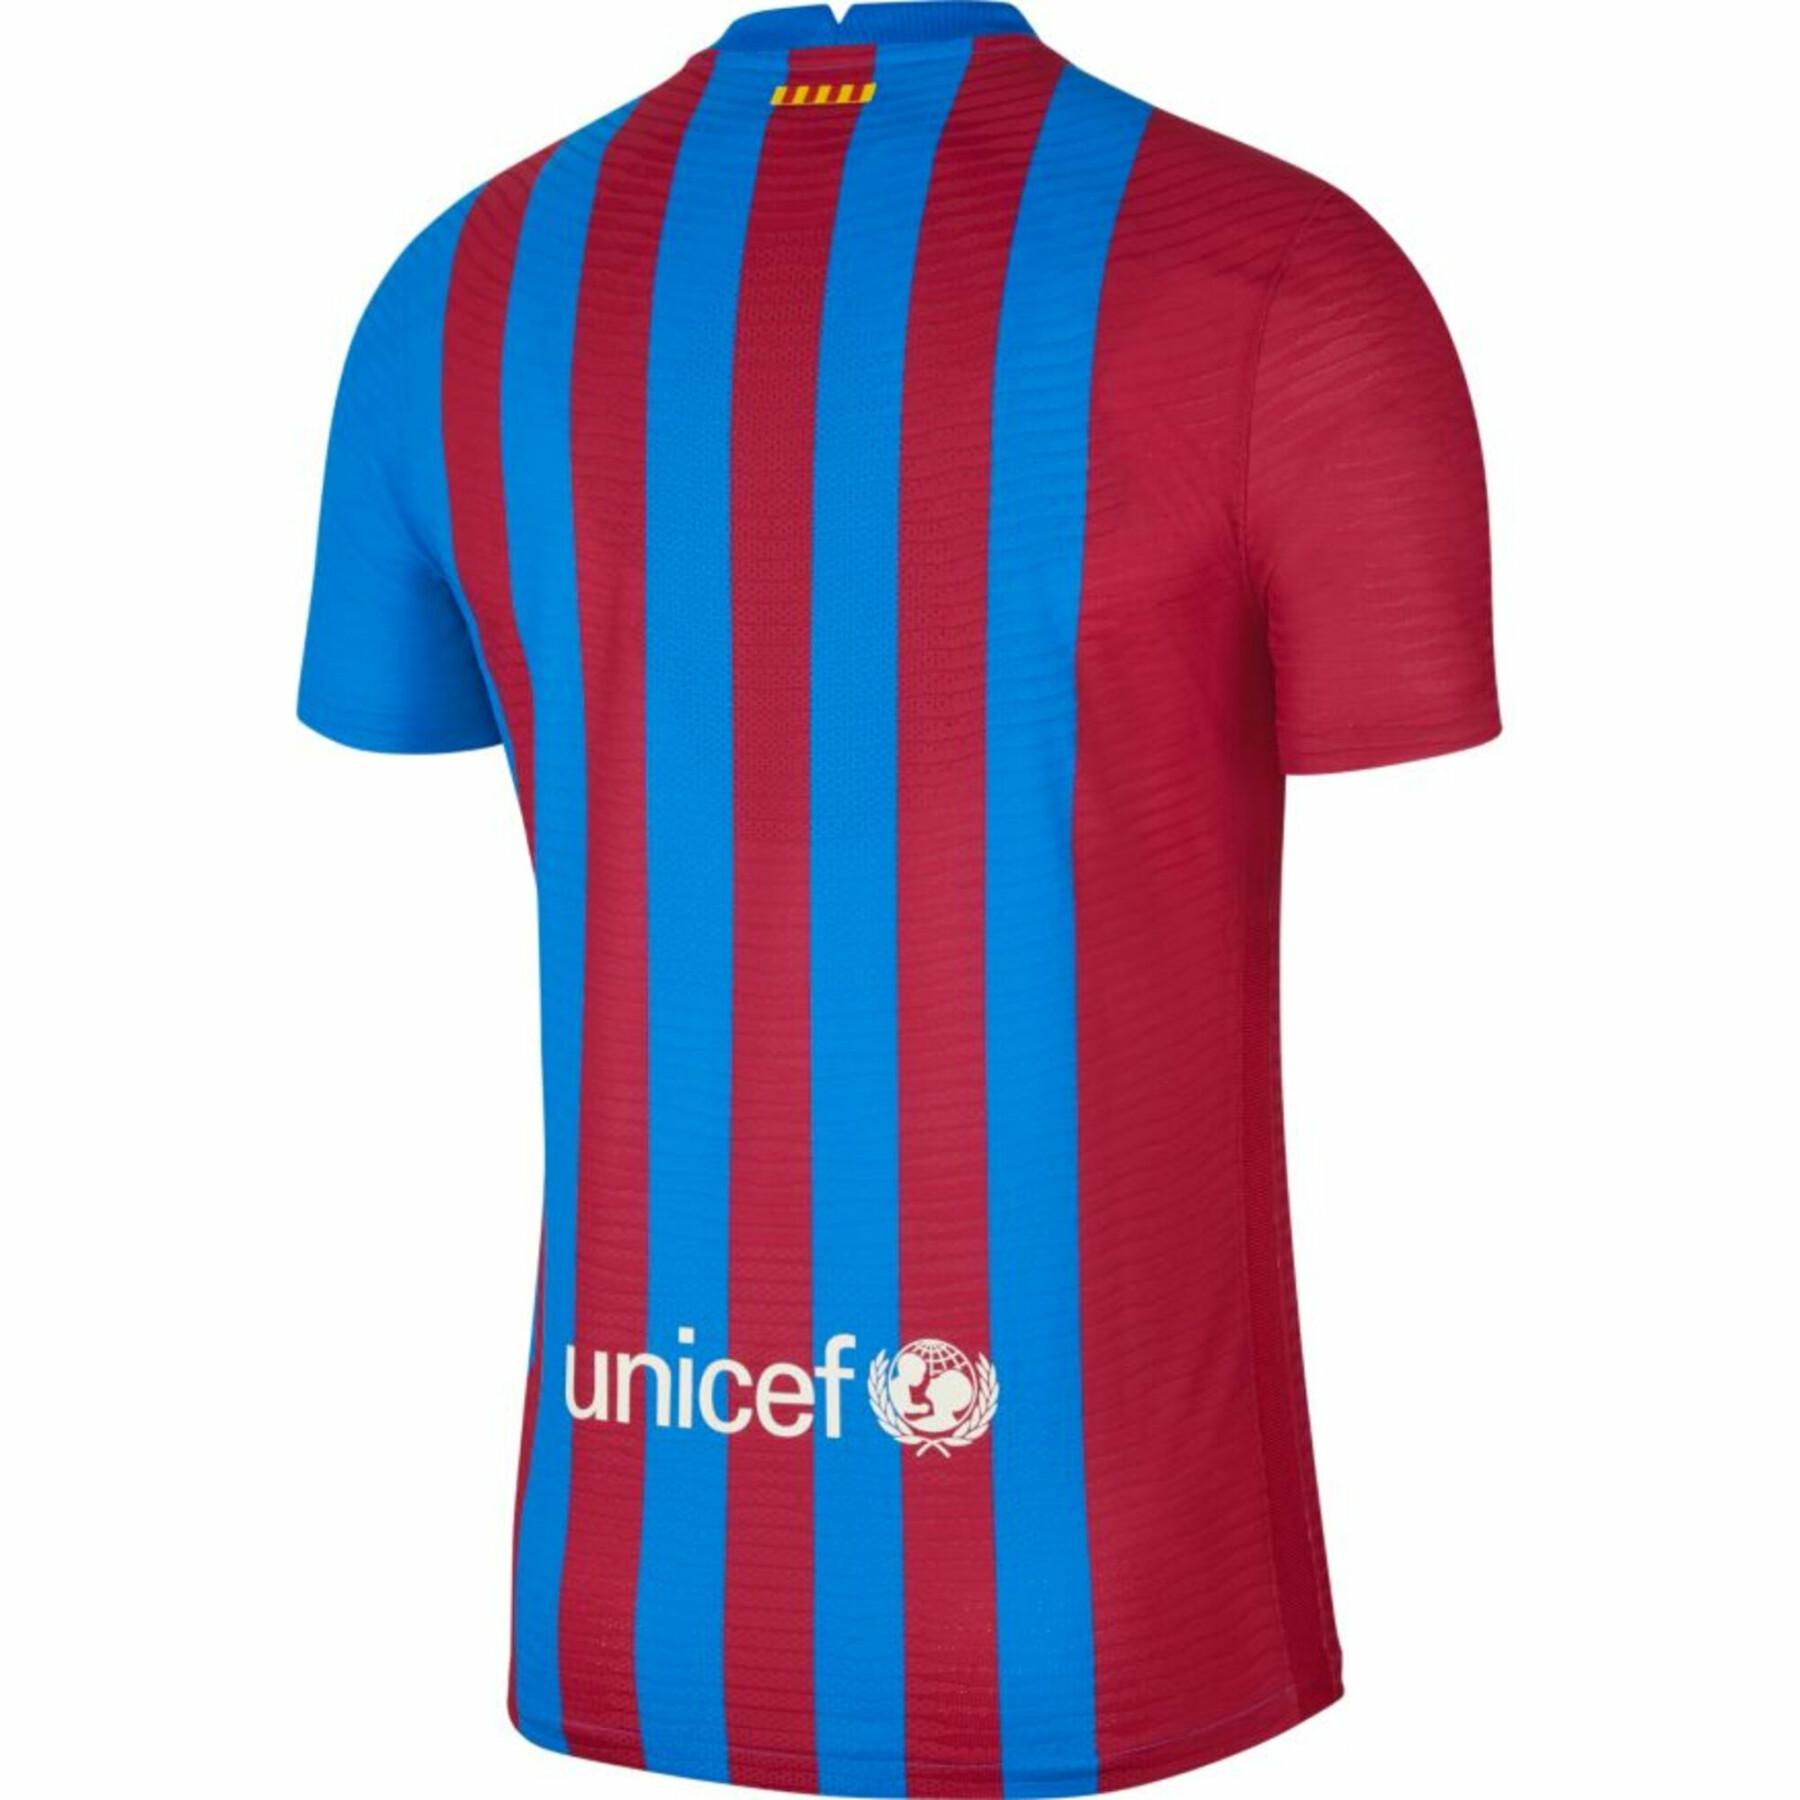 Maglia Home autentica FC Barcelone 2021/22